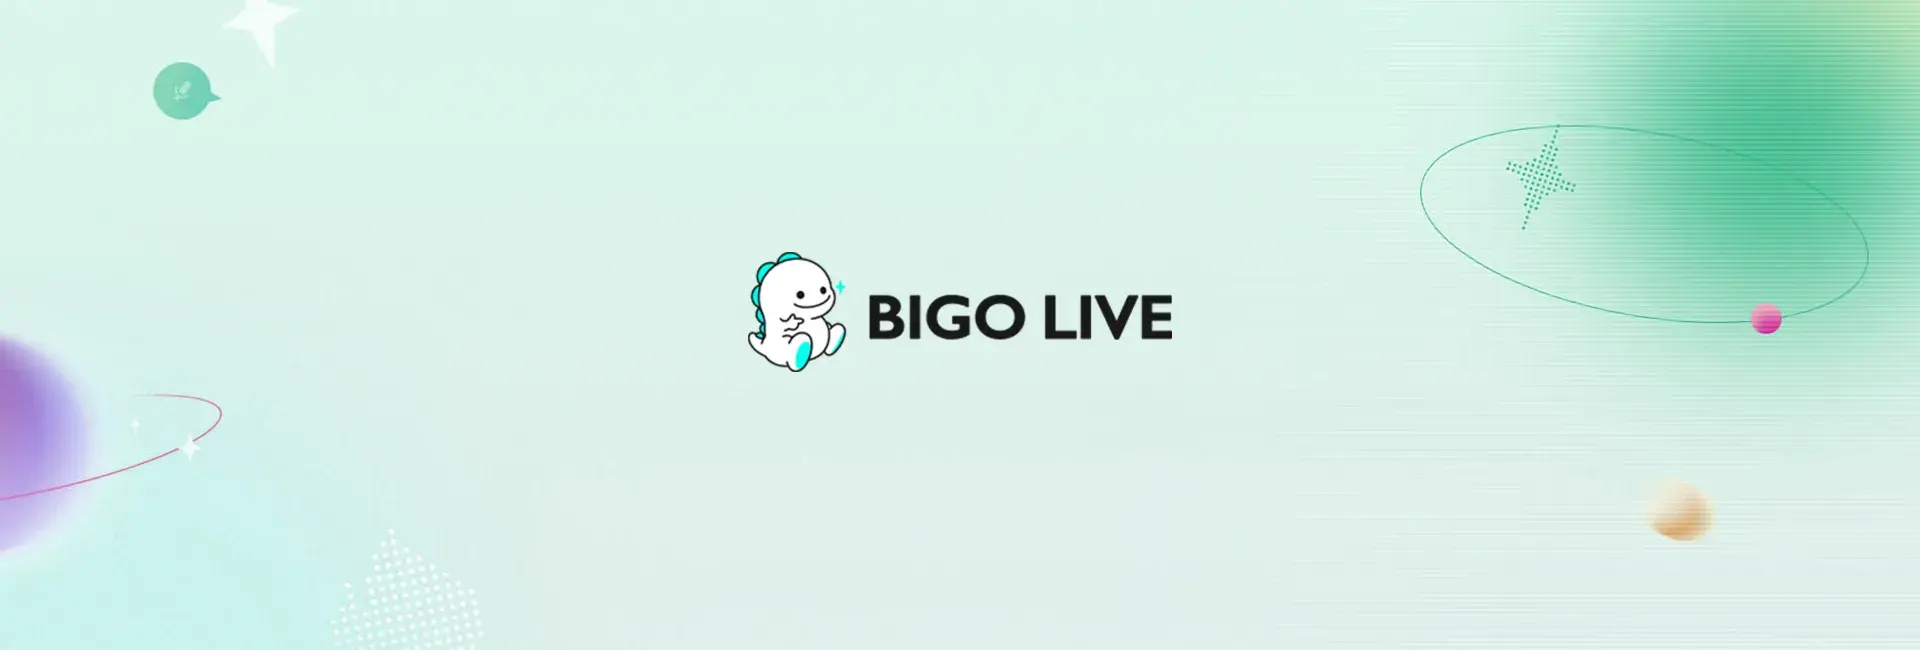 Bigo Live - 355 Diamonds (Global)	